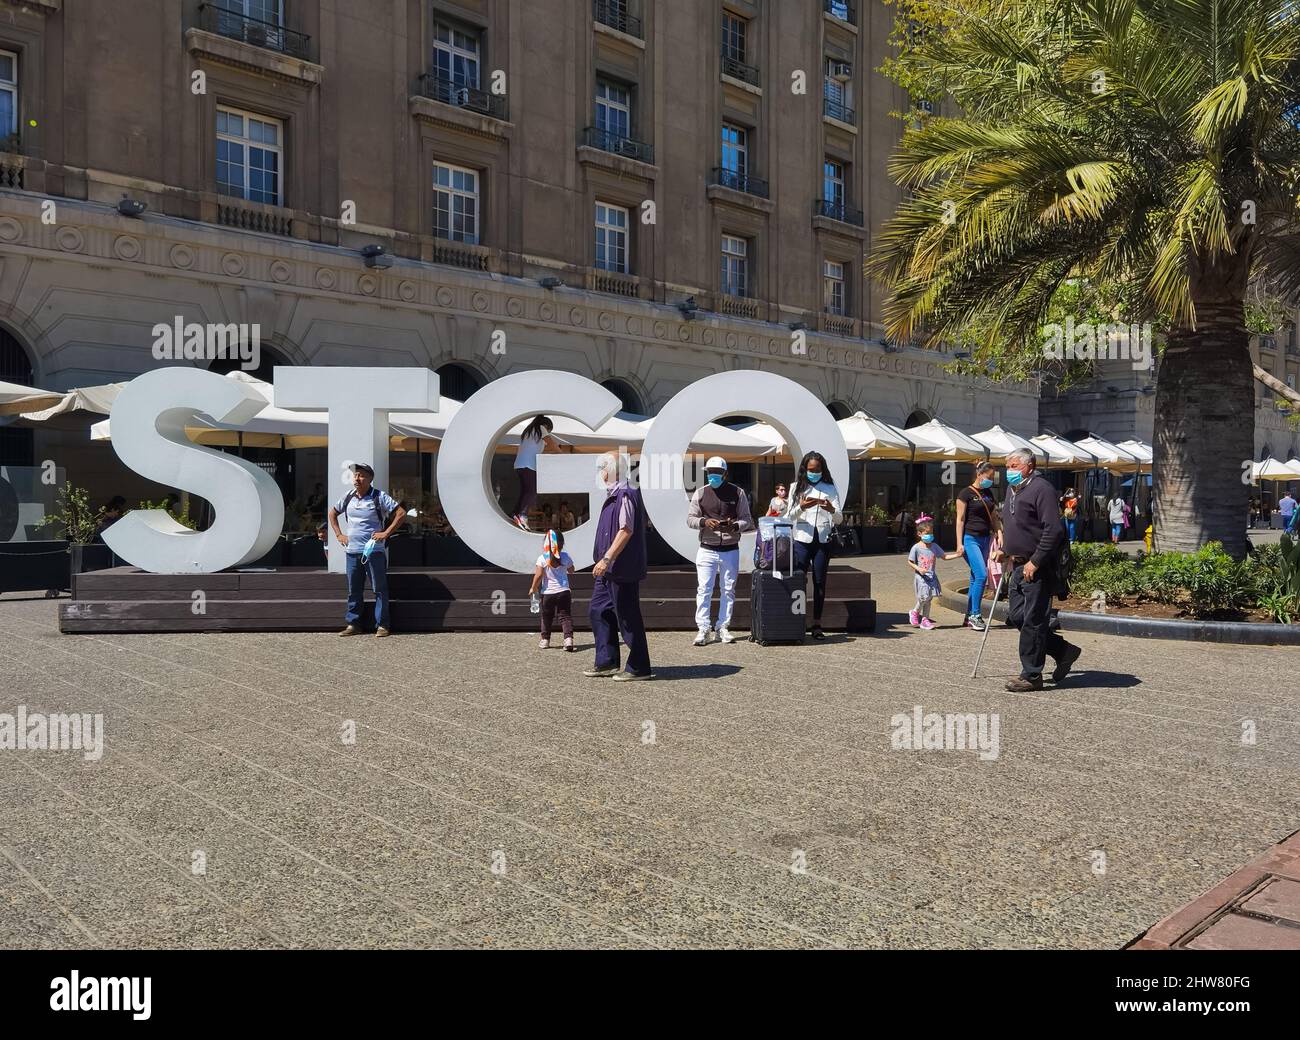 Santiago, Cile - 24 settembre 2021: Persone nella piazza principale. Lettere grandi della città. Foto Stock